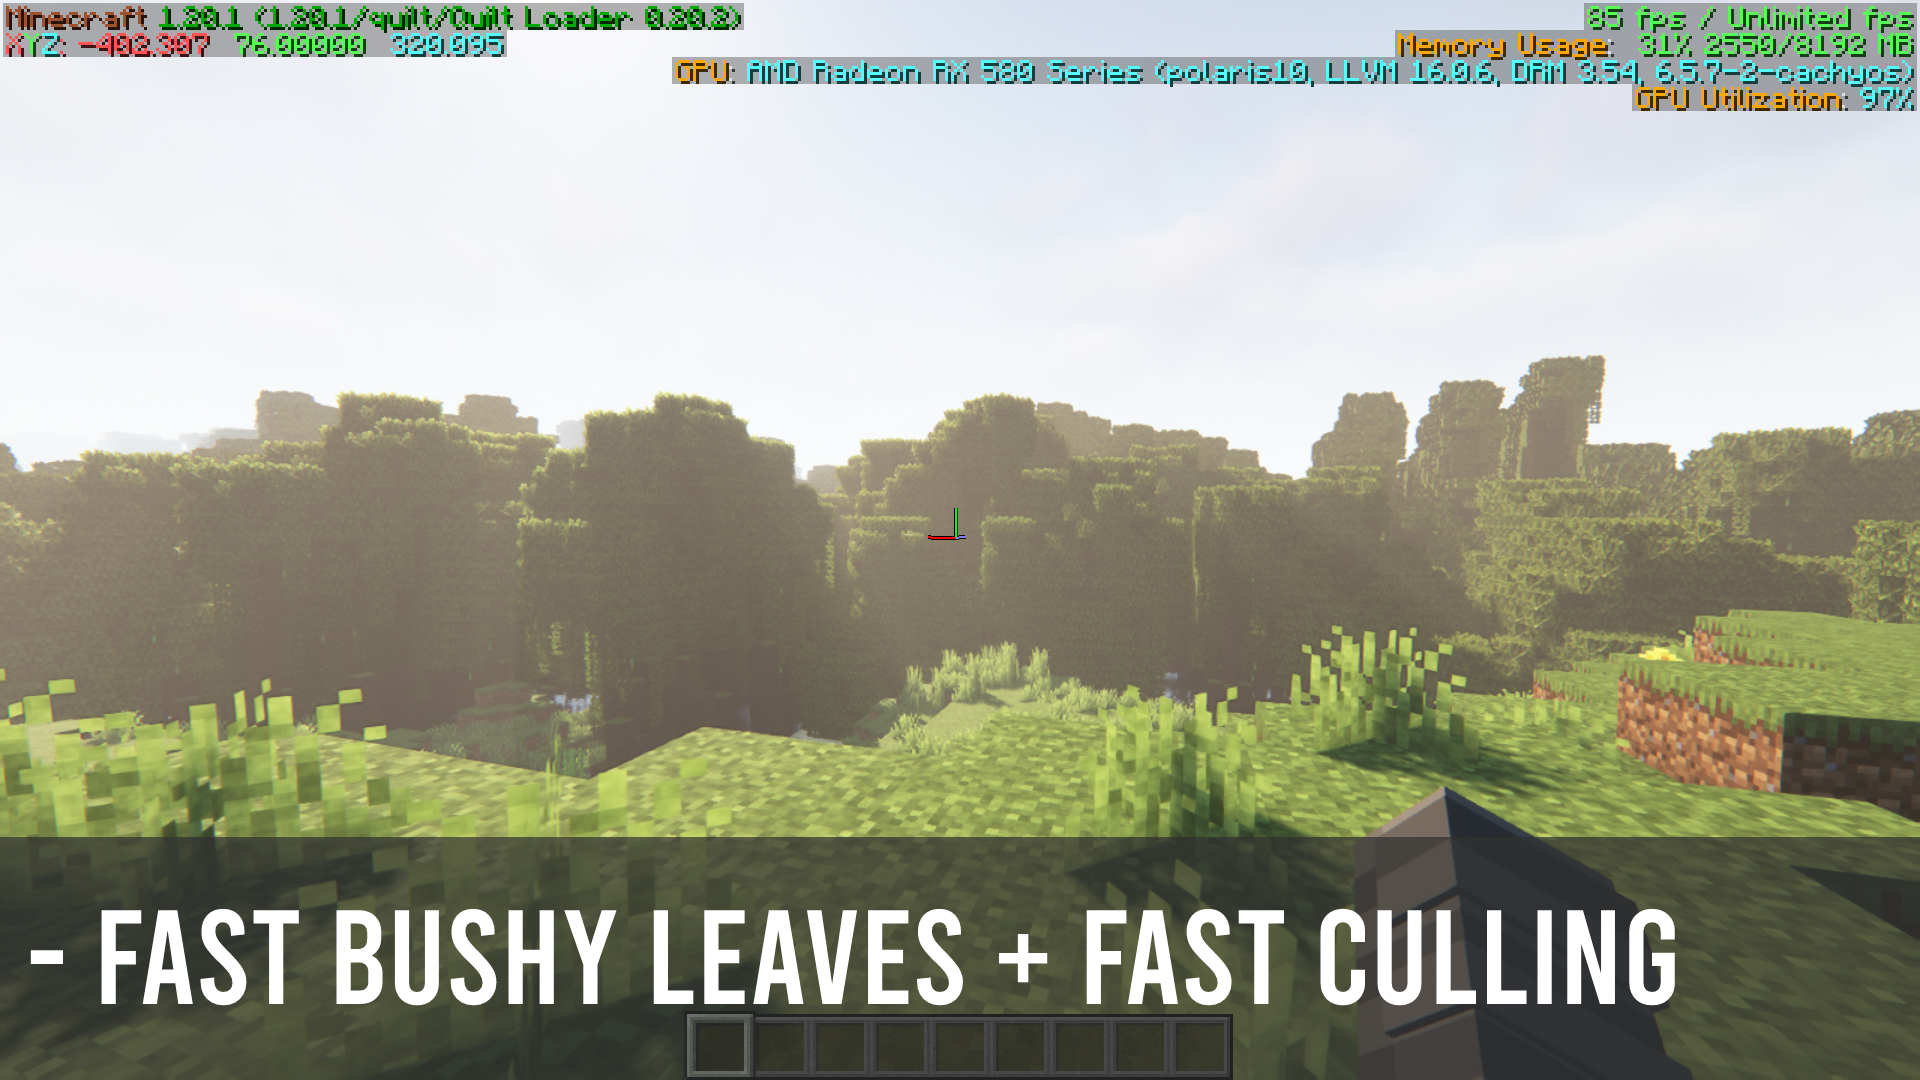 Fast bushy leaves + Fast culling